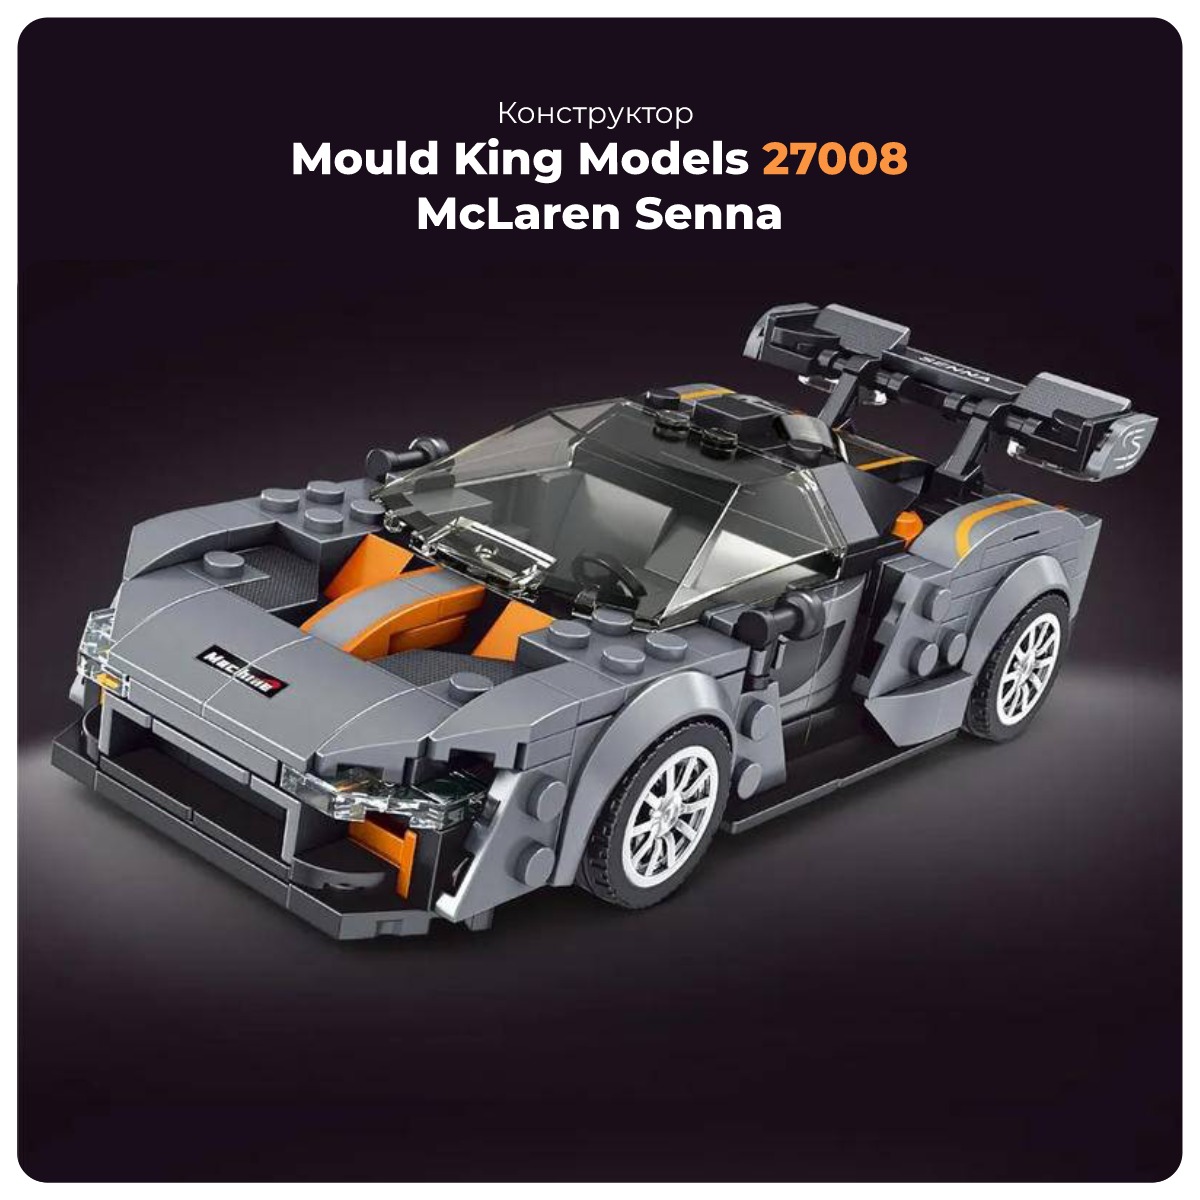 Mould-King-Models-27008-McLaren-Senna-01